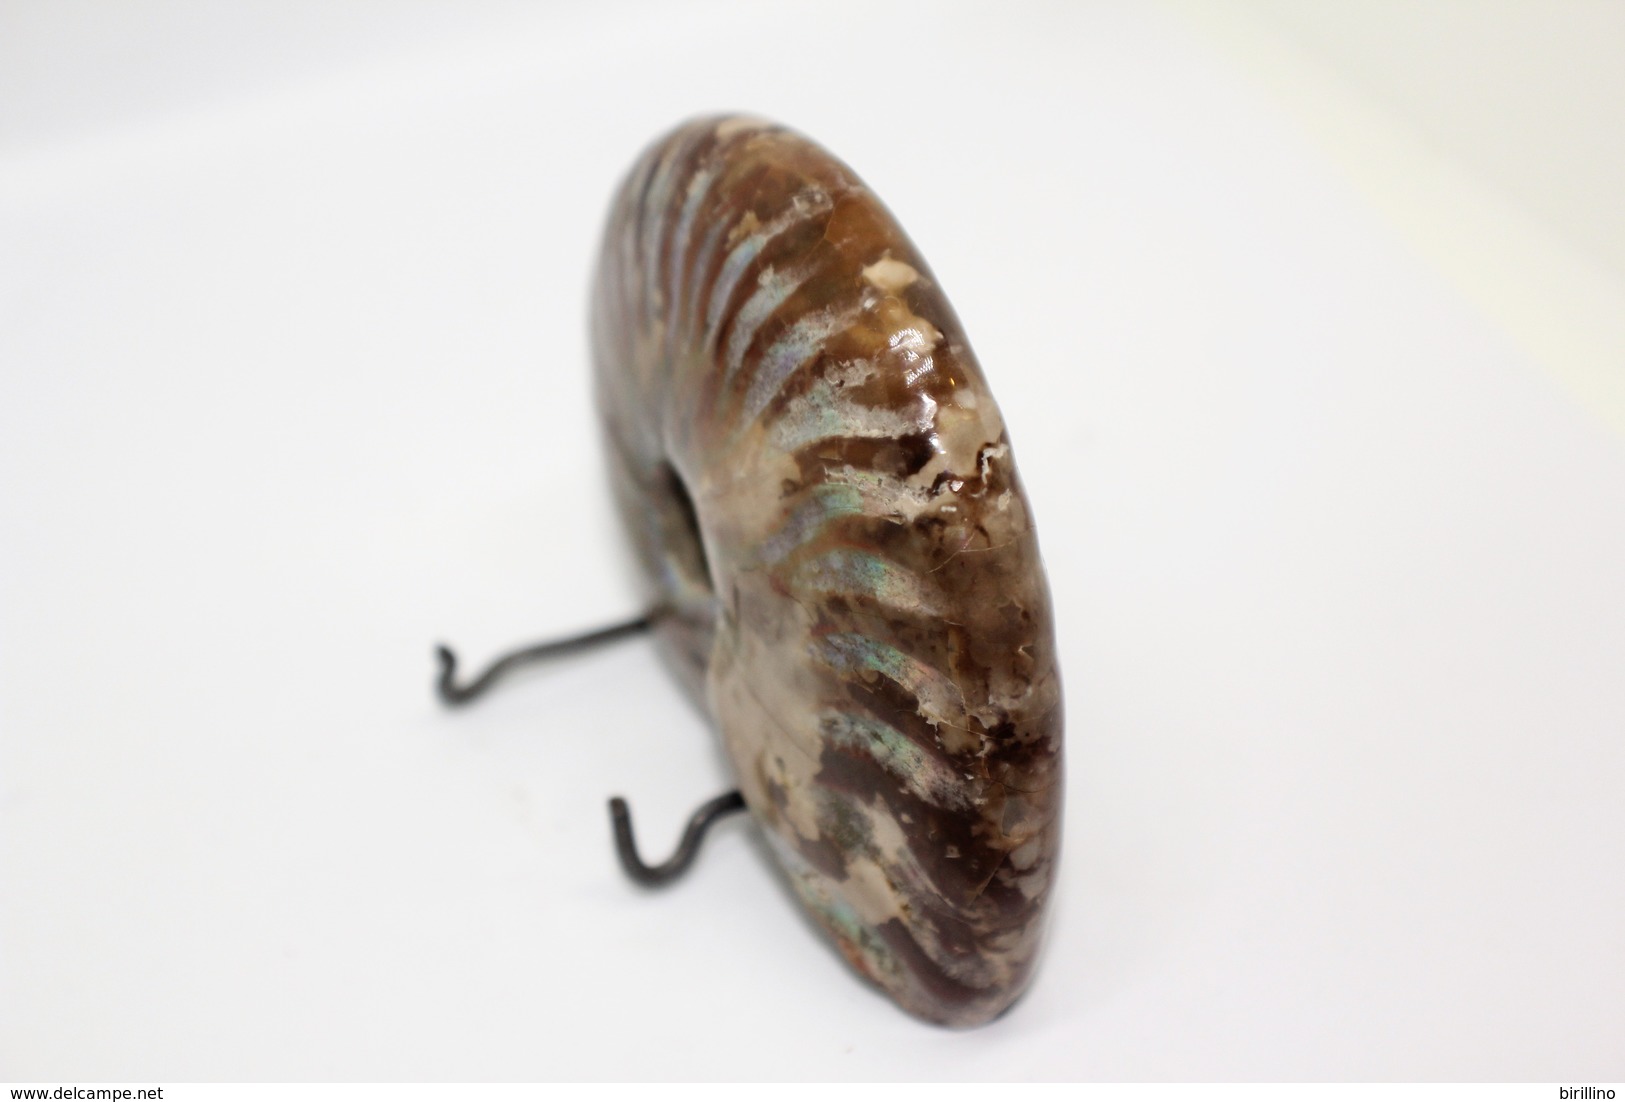 824 - Raro fossile di ammonite di conchiglia - Provenienza Madagascar Peso 109 gr